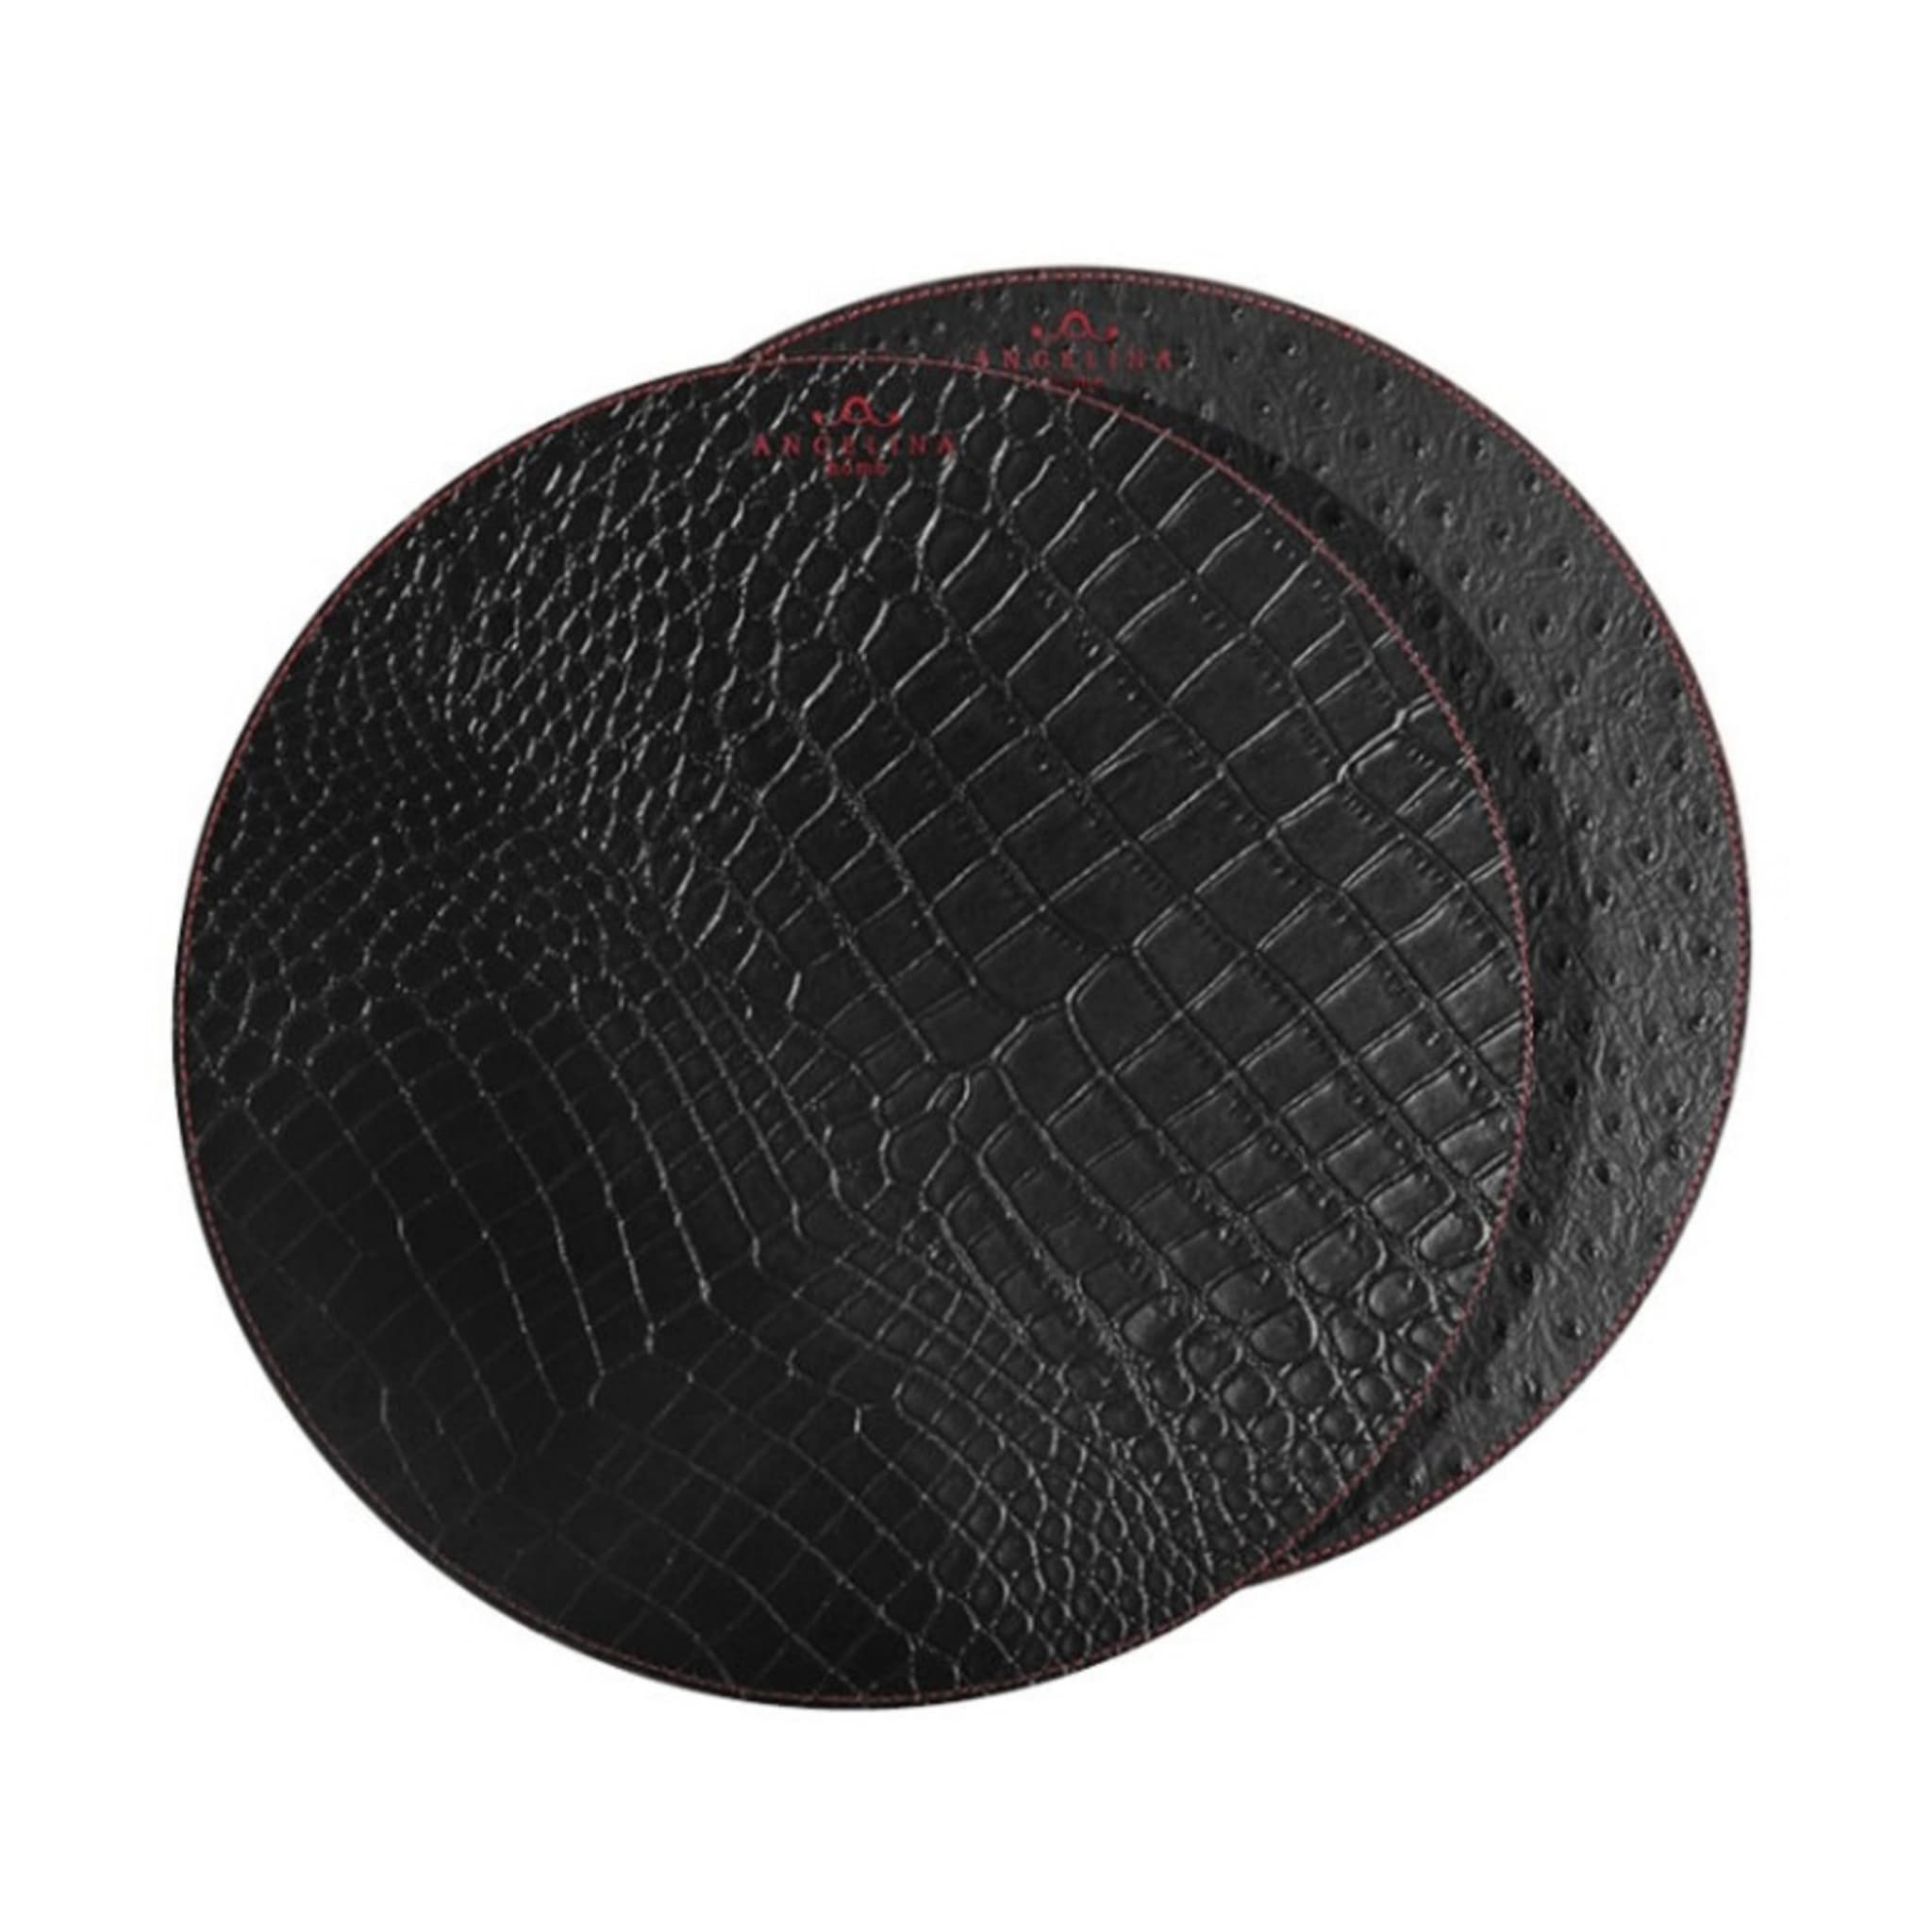 Kenya Medium Set of 2 Round Black Leather Placemats - Main view